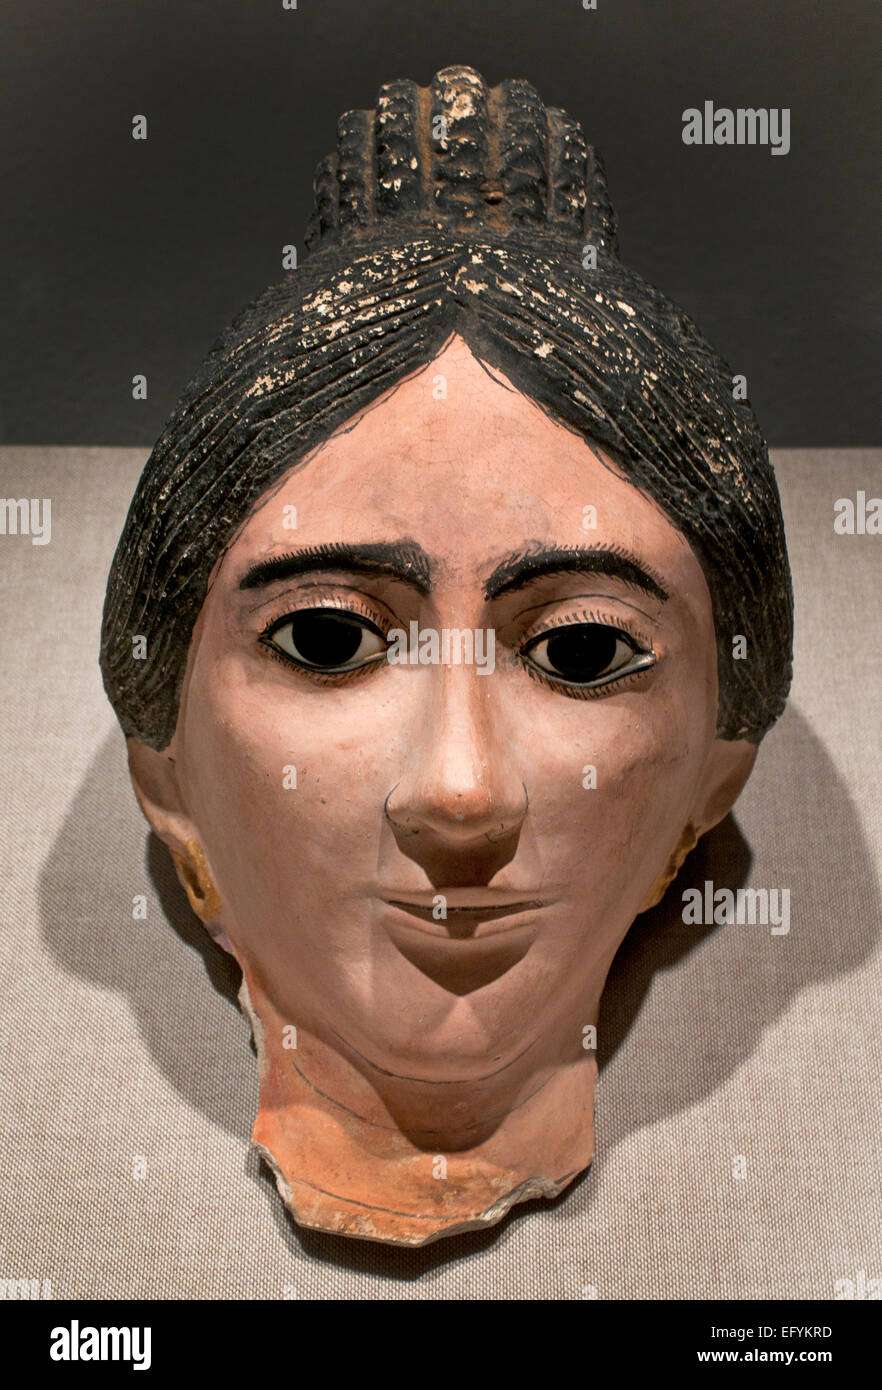 Romano momie égyptienne portrait d'une femme , période impériale romaine, vers 2e siècle Musée germanique Cologne Allemagne Banque D'Images